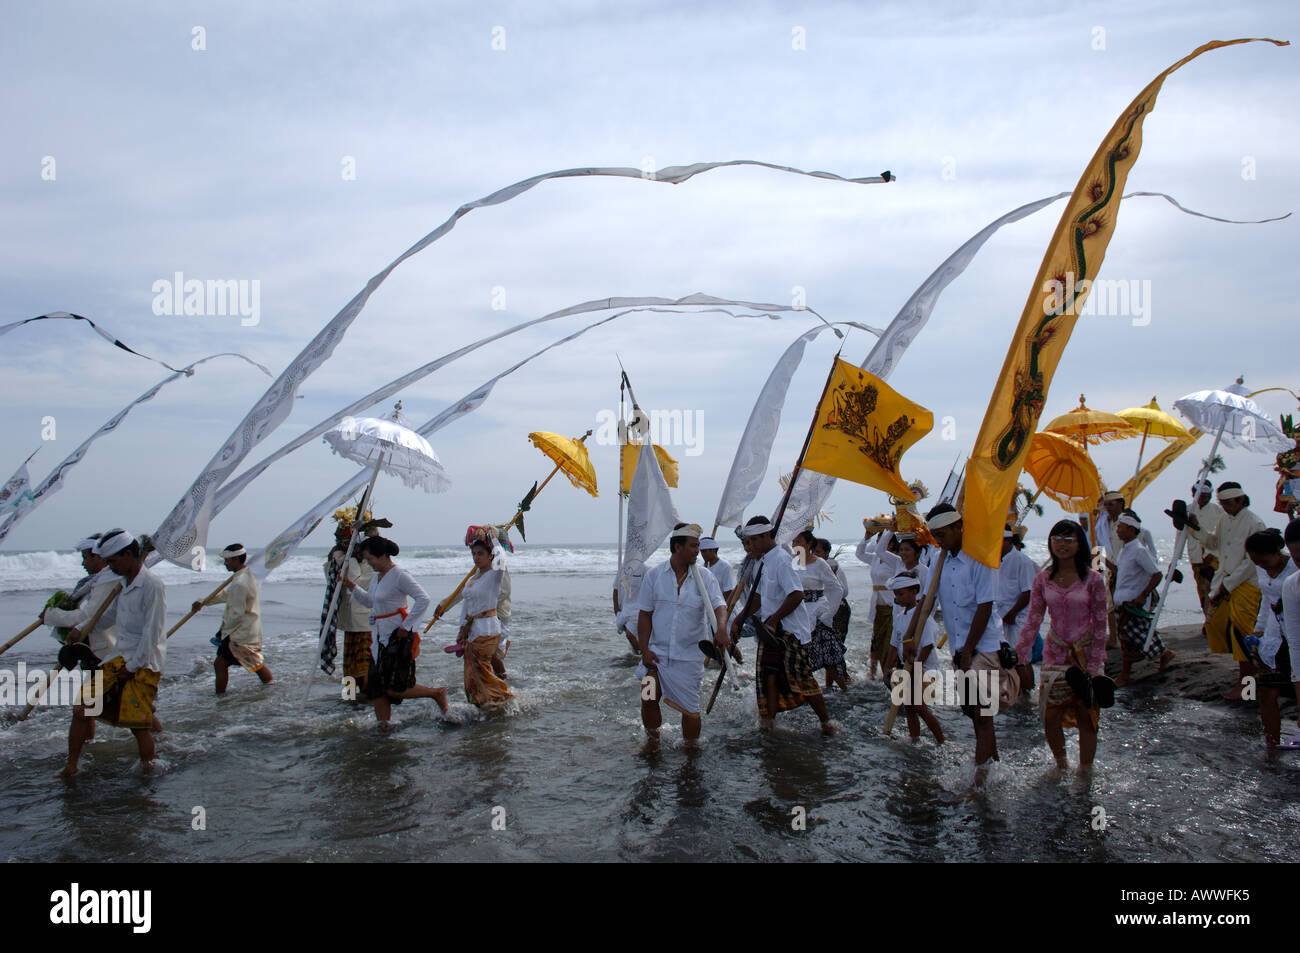 Eine Zeremonie, um die Götter zu besänftigen und Tiere zu opfern. Balinesische Fischer tun dies einmal im Jahr kurz vor Nyepi. Bali, Indonesien Stockfoto